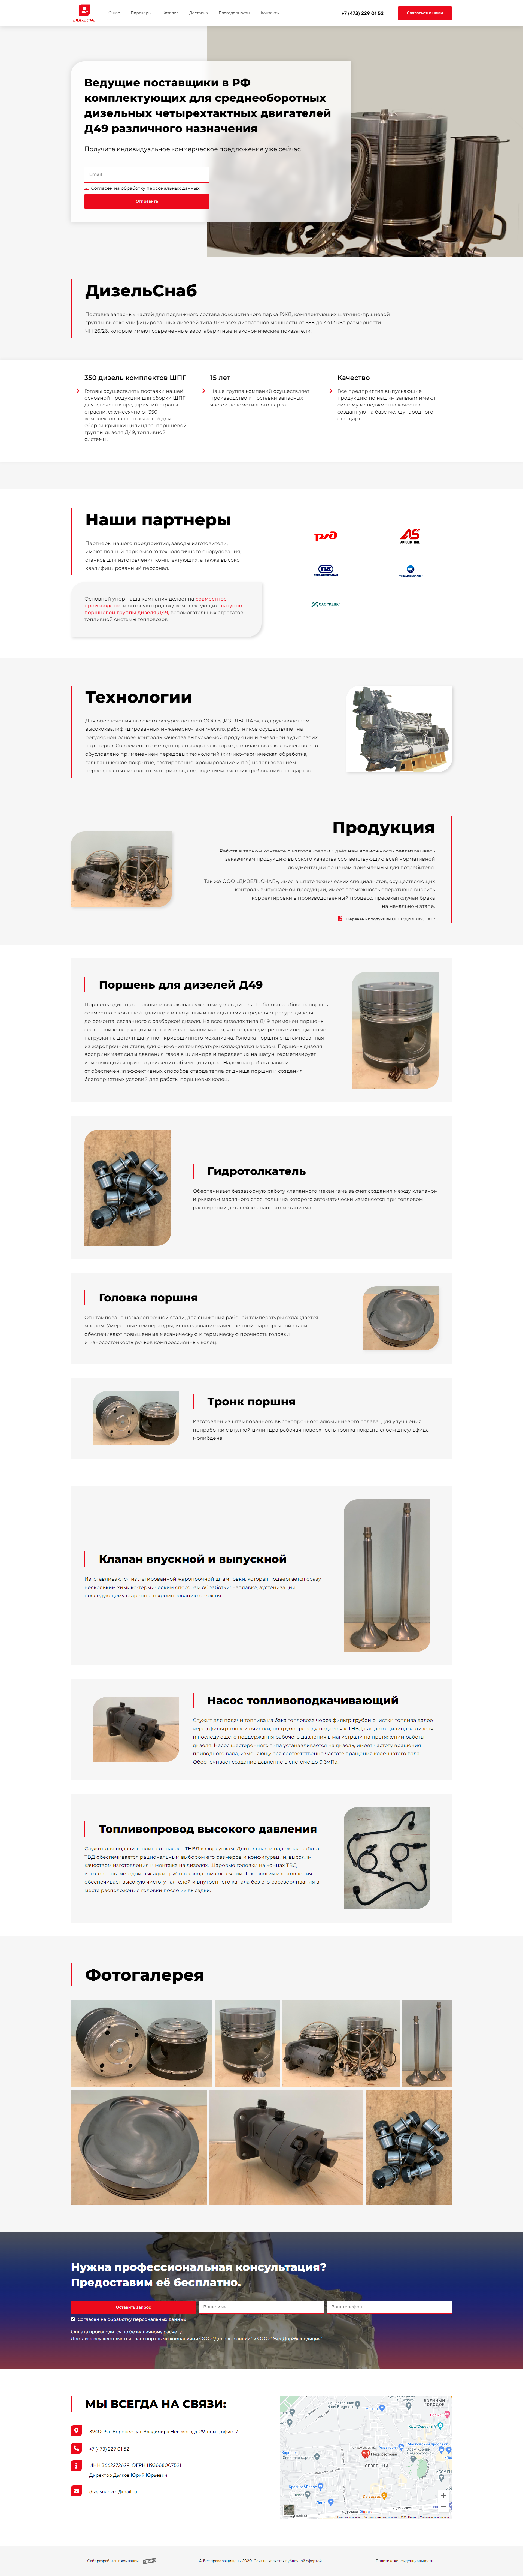 Дизельснаб - комплектующие для дизельных двигателей в РФ и СНГ